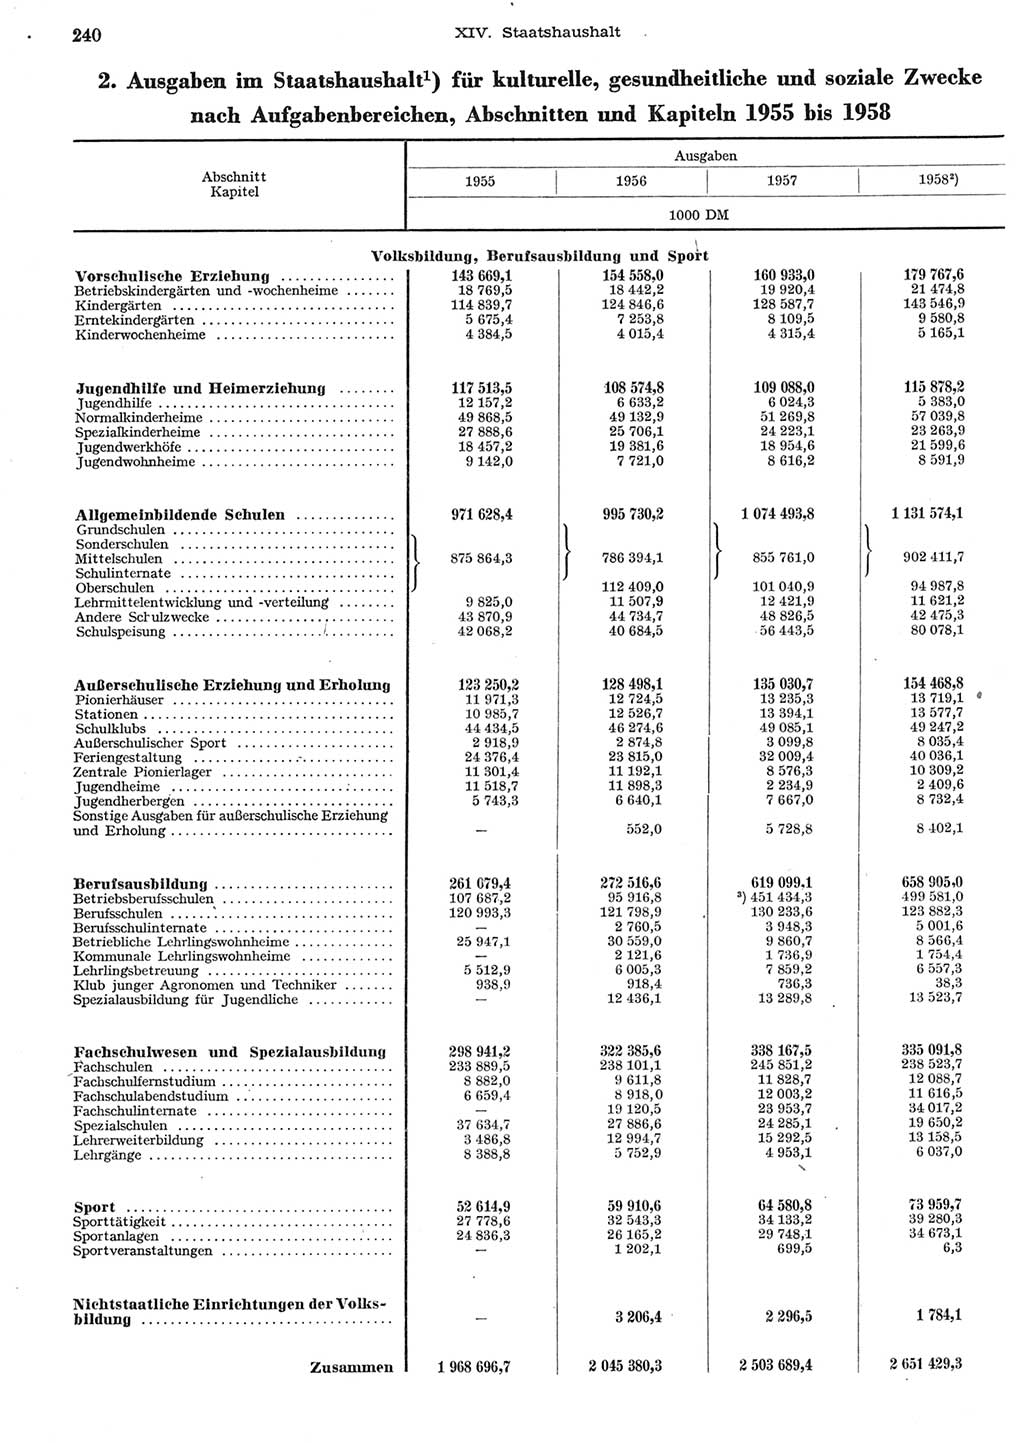 Statistisches Jahrbuch der Deutschen Demokratischen Republik (DDR) 1958, Seite 240 (Stat. Jb. DDR 1958, S. 240)